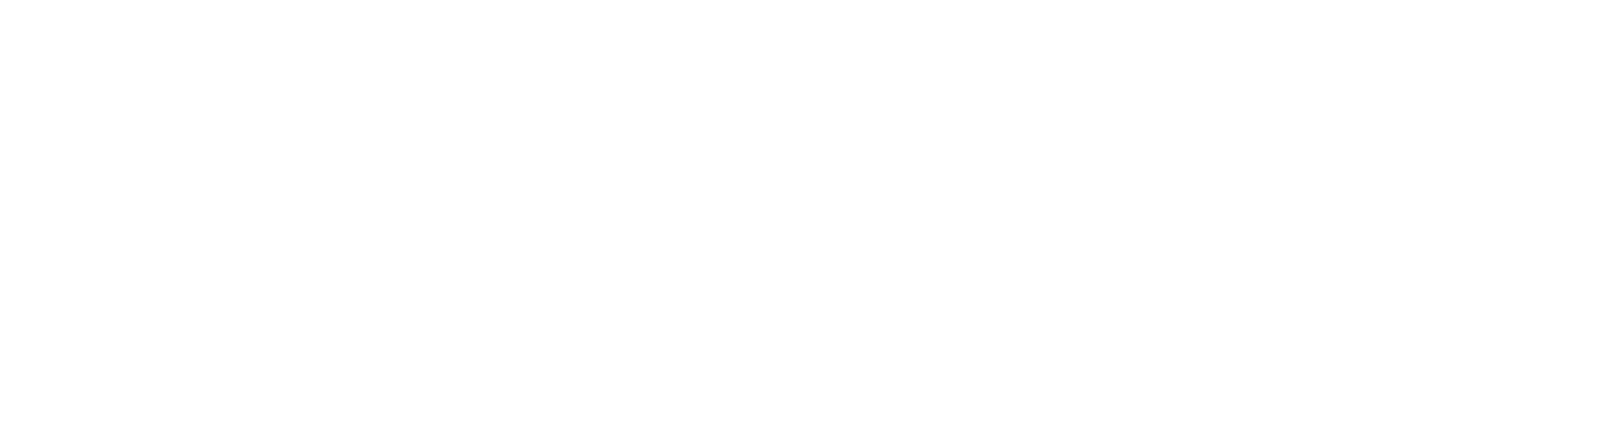 Heartland Nanny Agency 